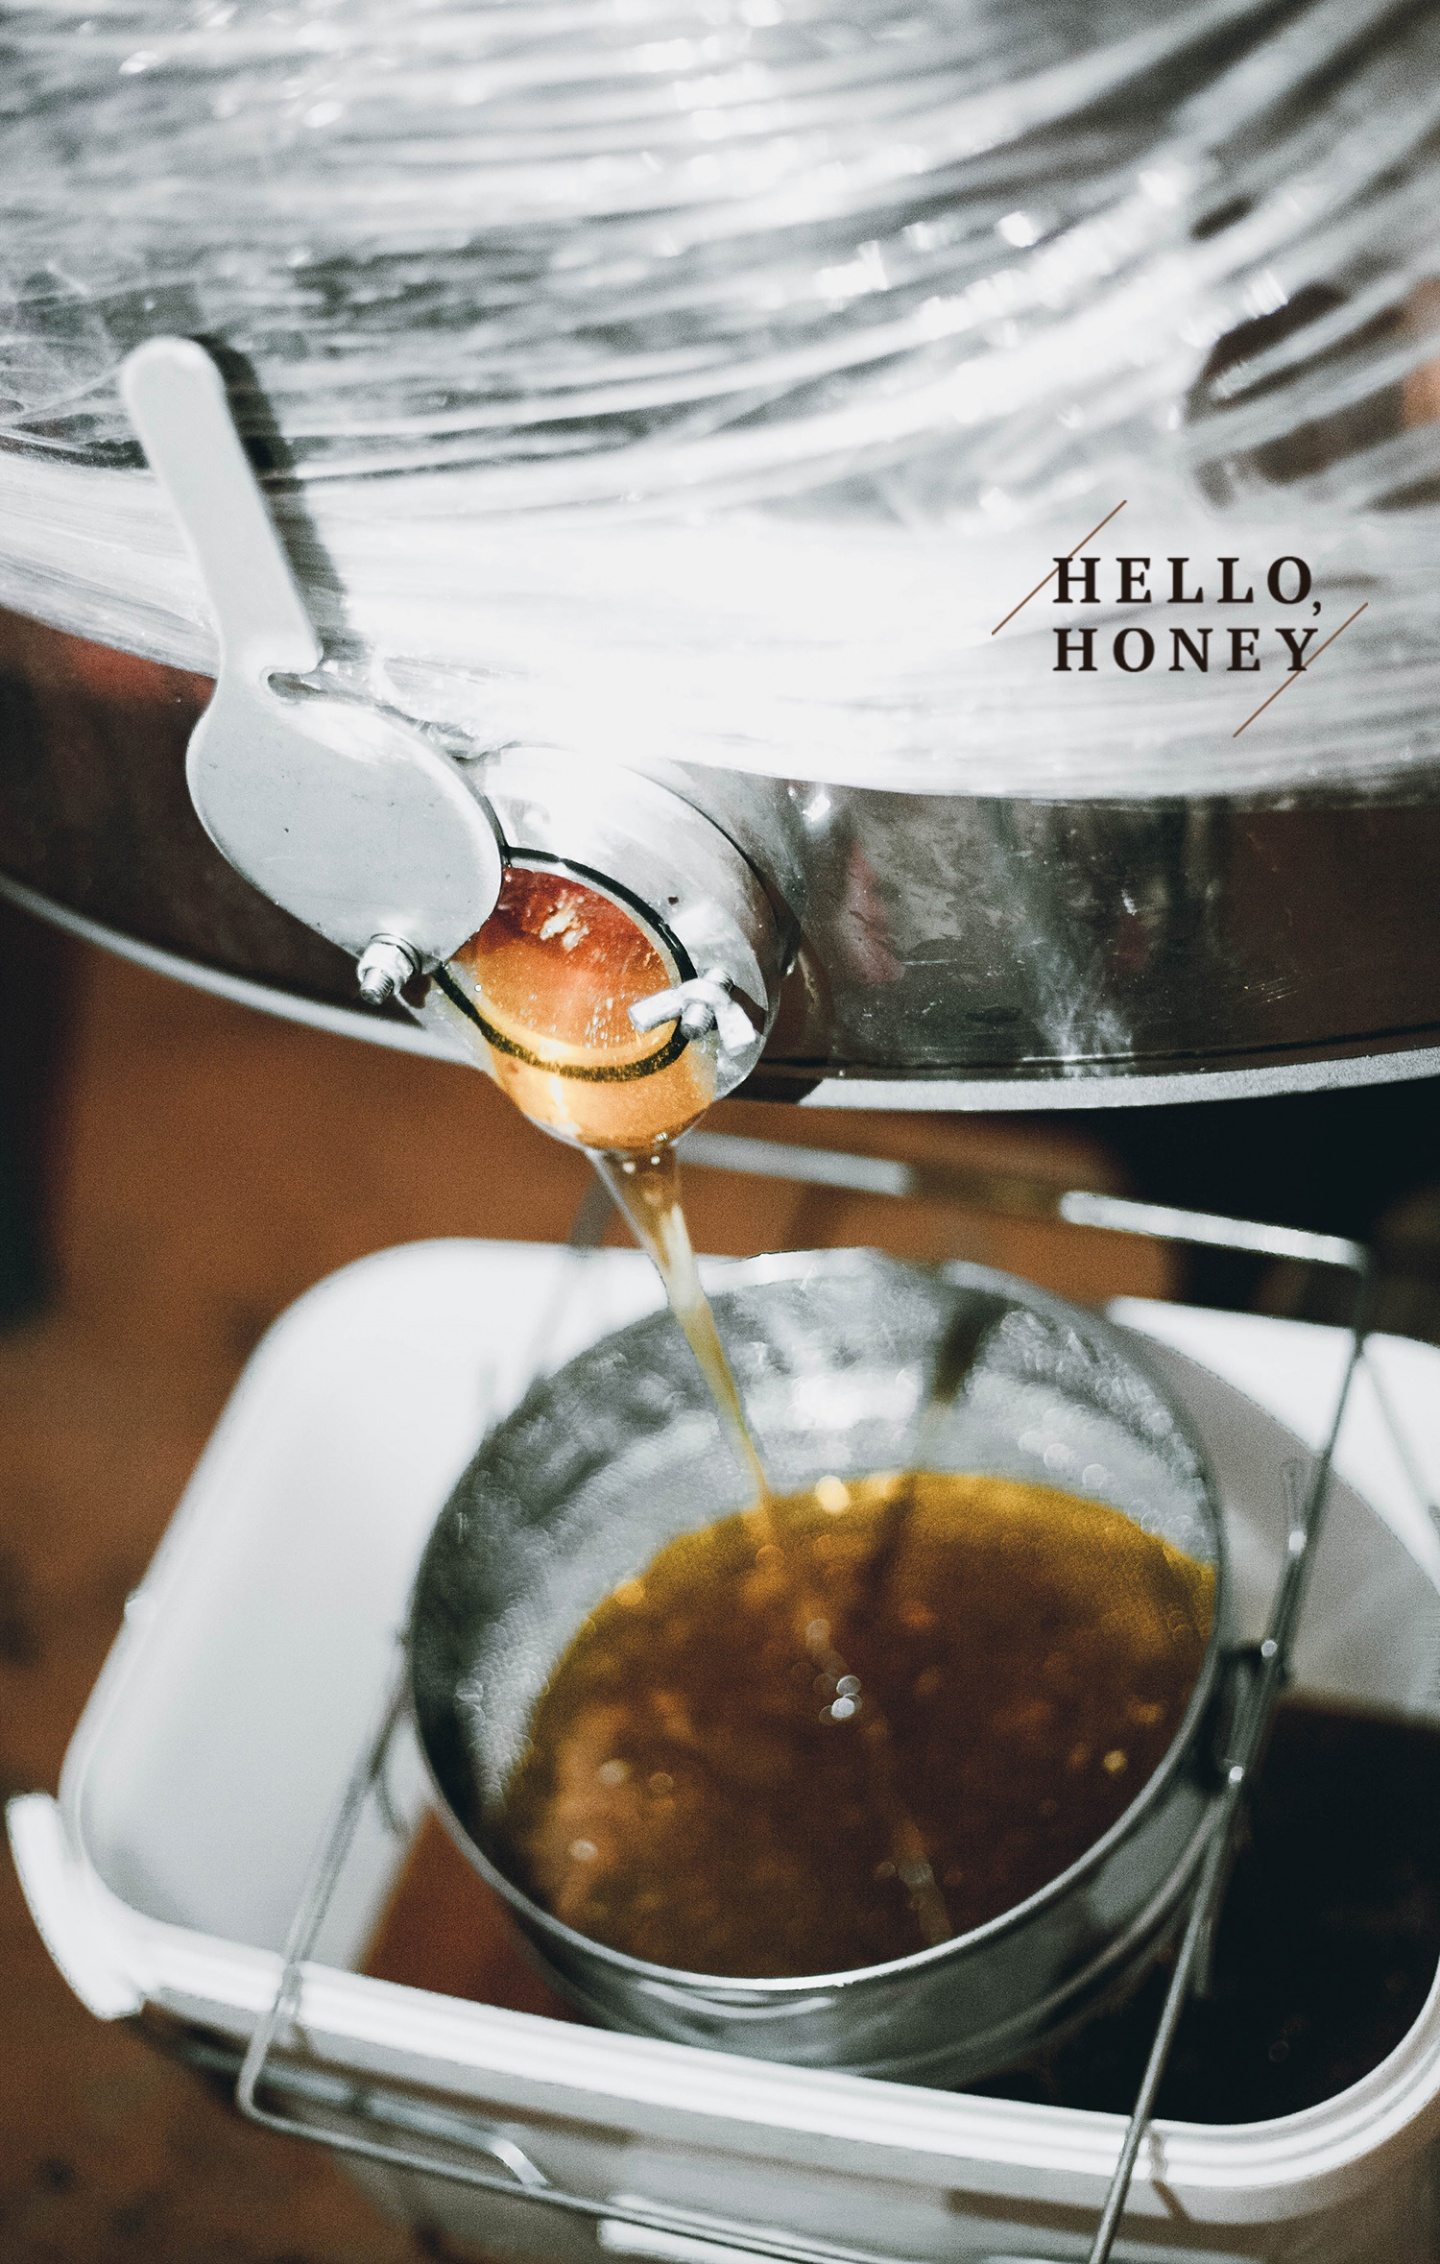 Hello honey: история, записанная со слов одной маленькой баночки мёда